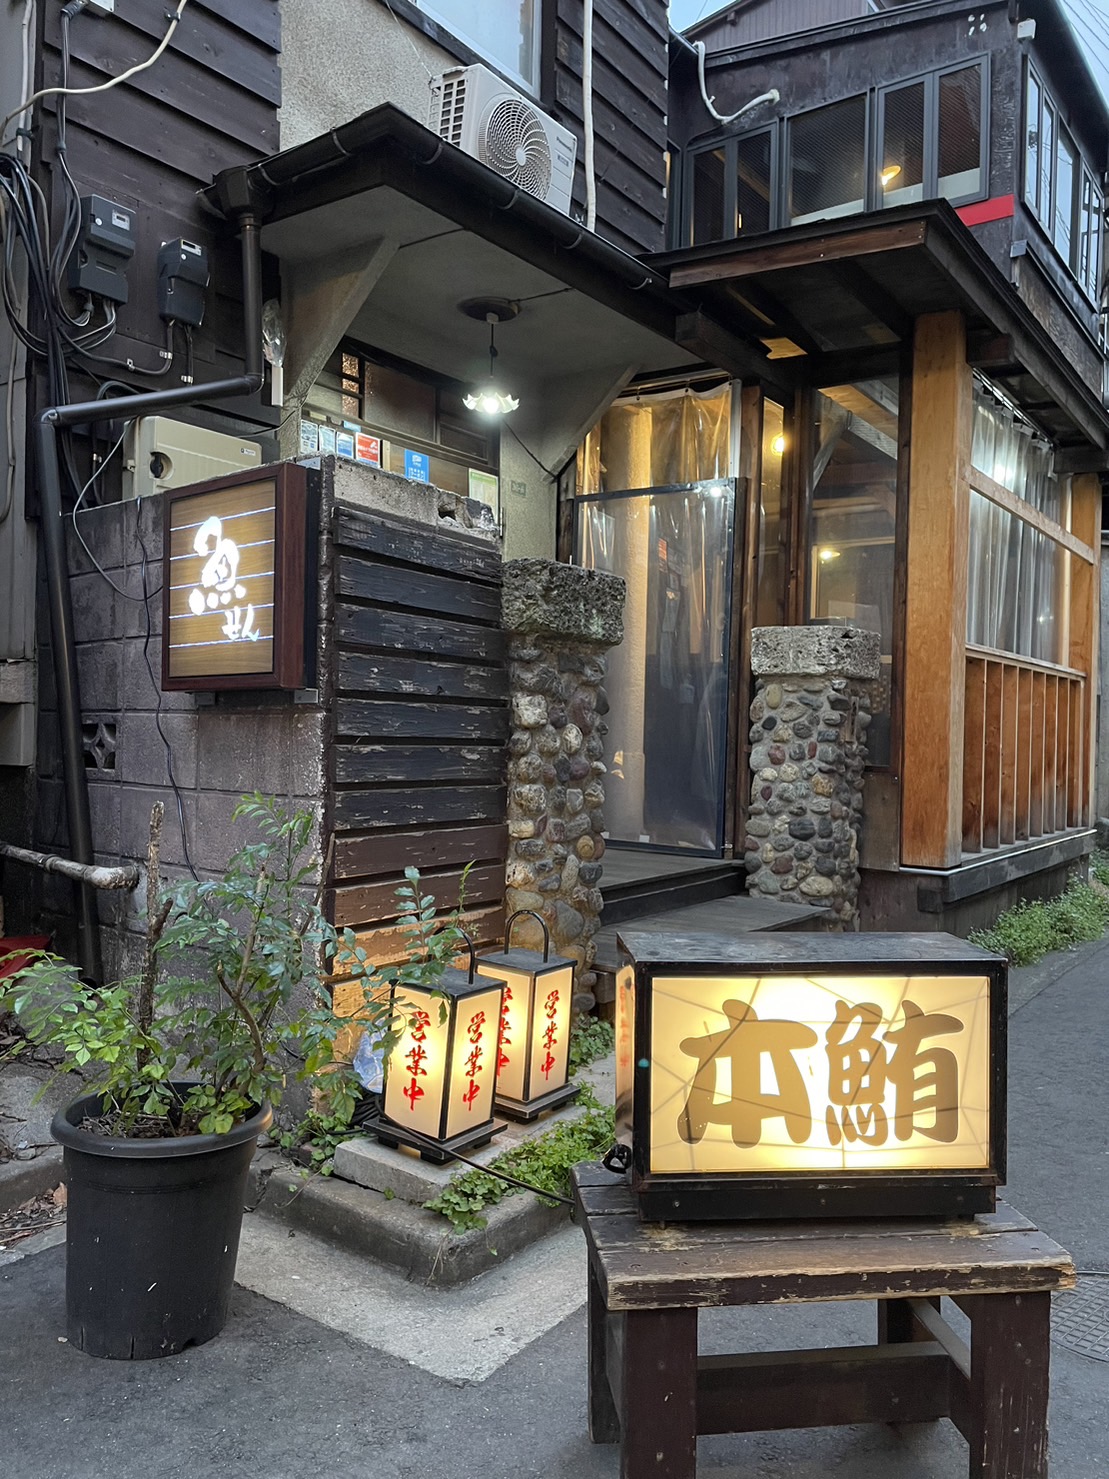 東京都中野区の安い、おいしい隠れ家的古民家の居酒屋。本鮪（本マグロ）、黒毛和牛（A5ランク）、全国の美味しい地酒、世界中のワイン、飲み放題付きコース料理あり。